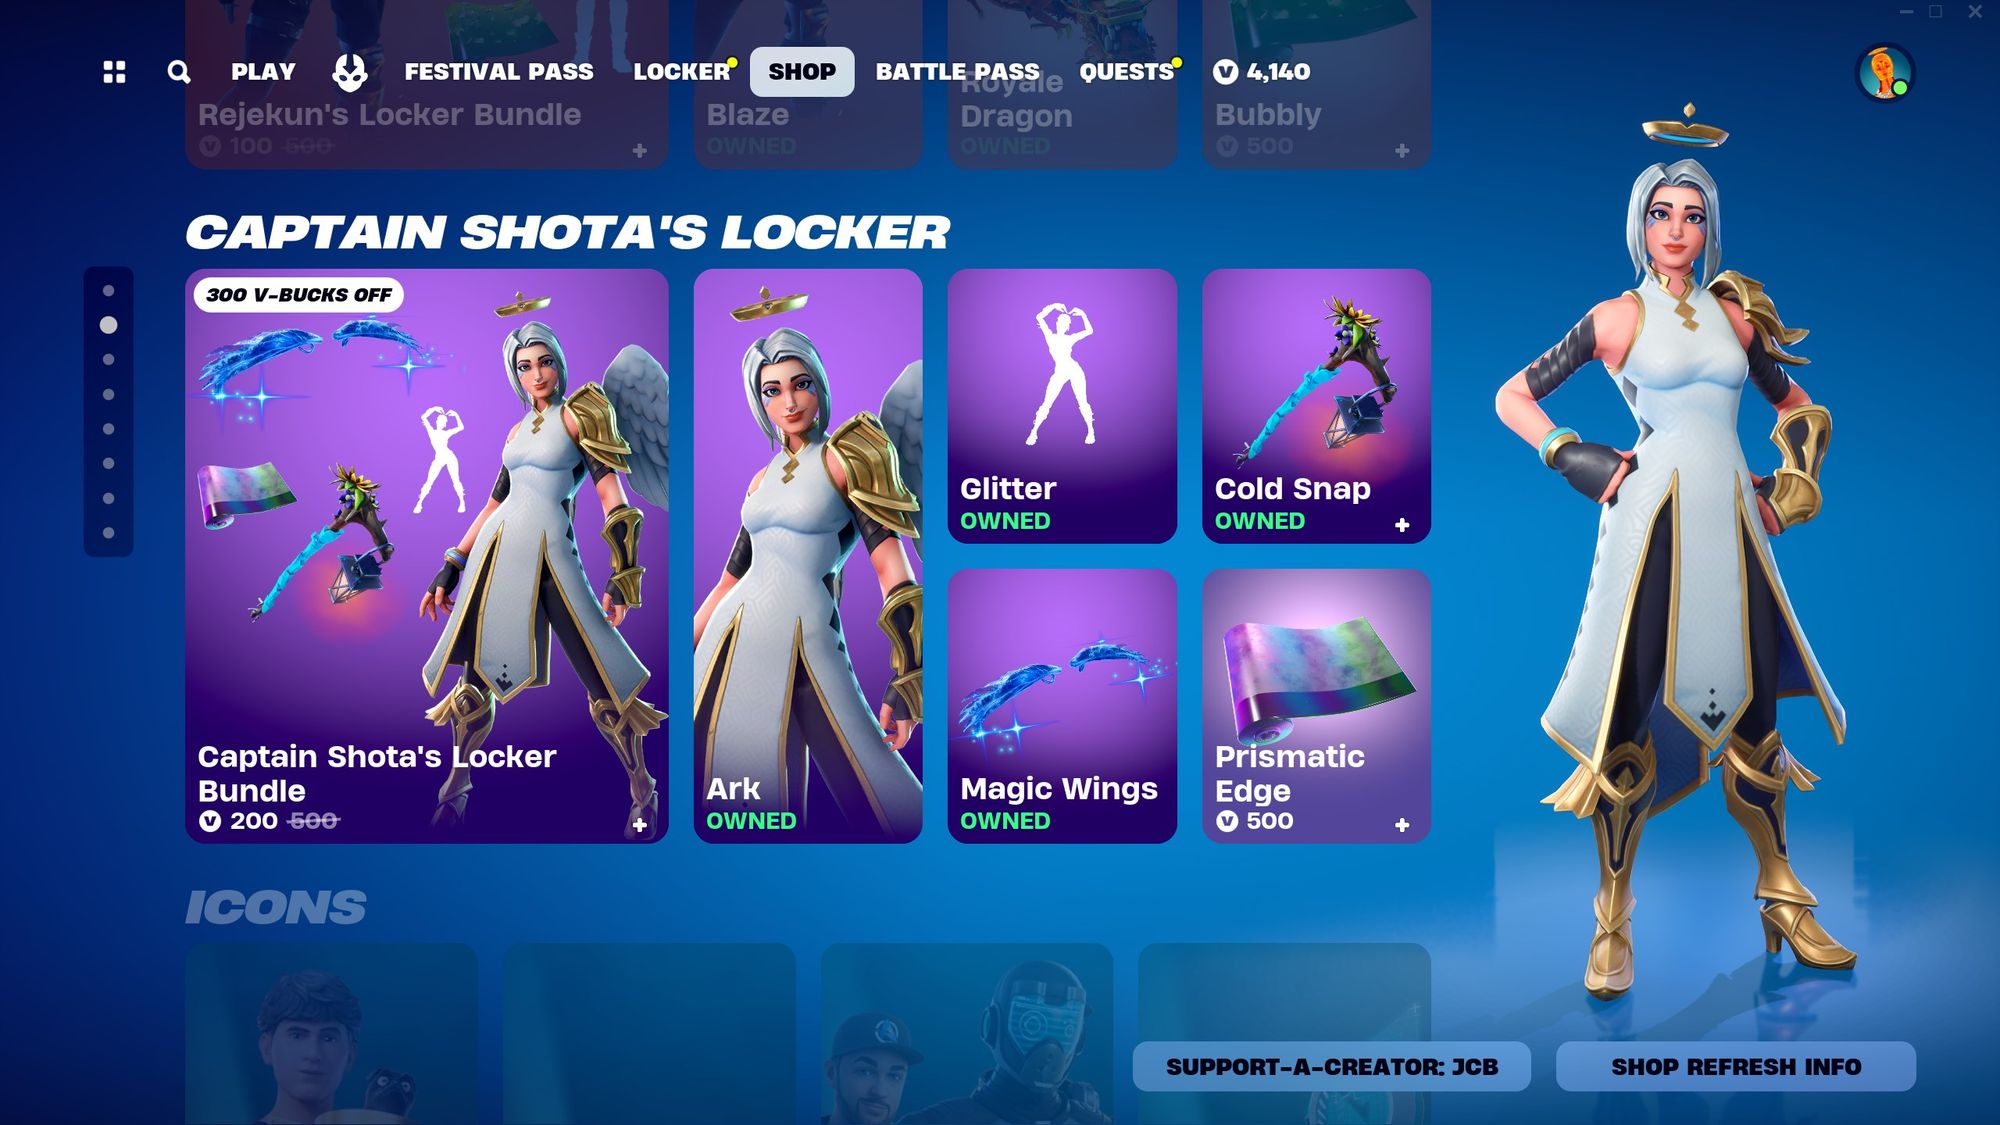 Captain Shota’s Locker Bundle Available Now